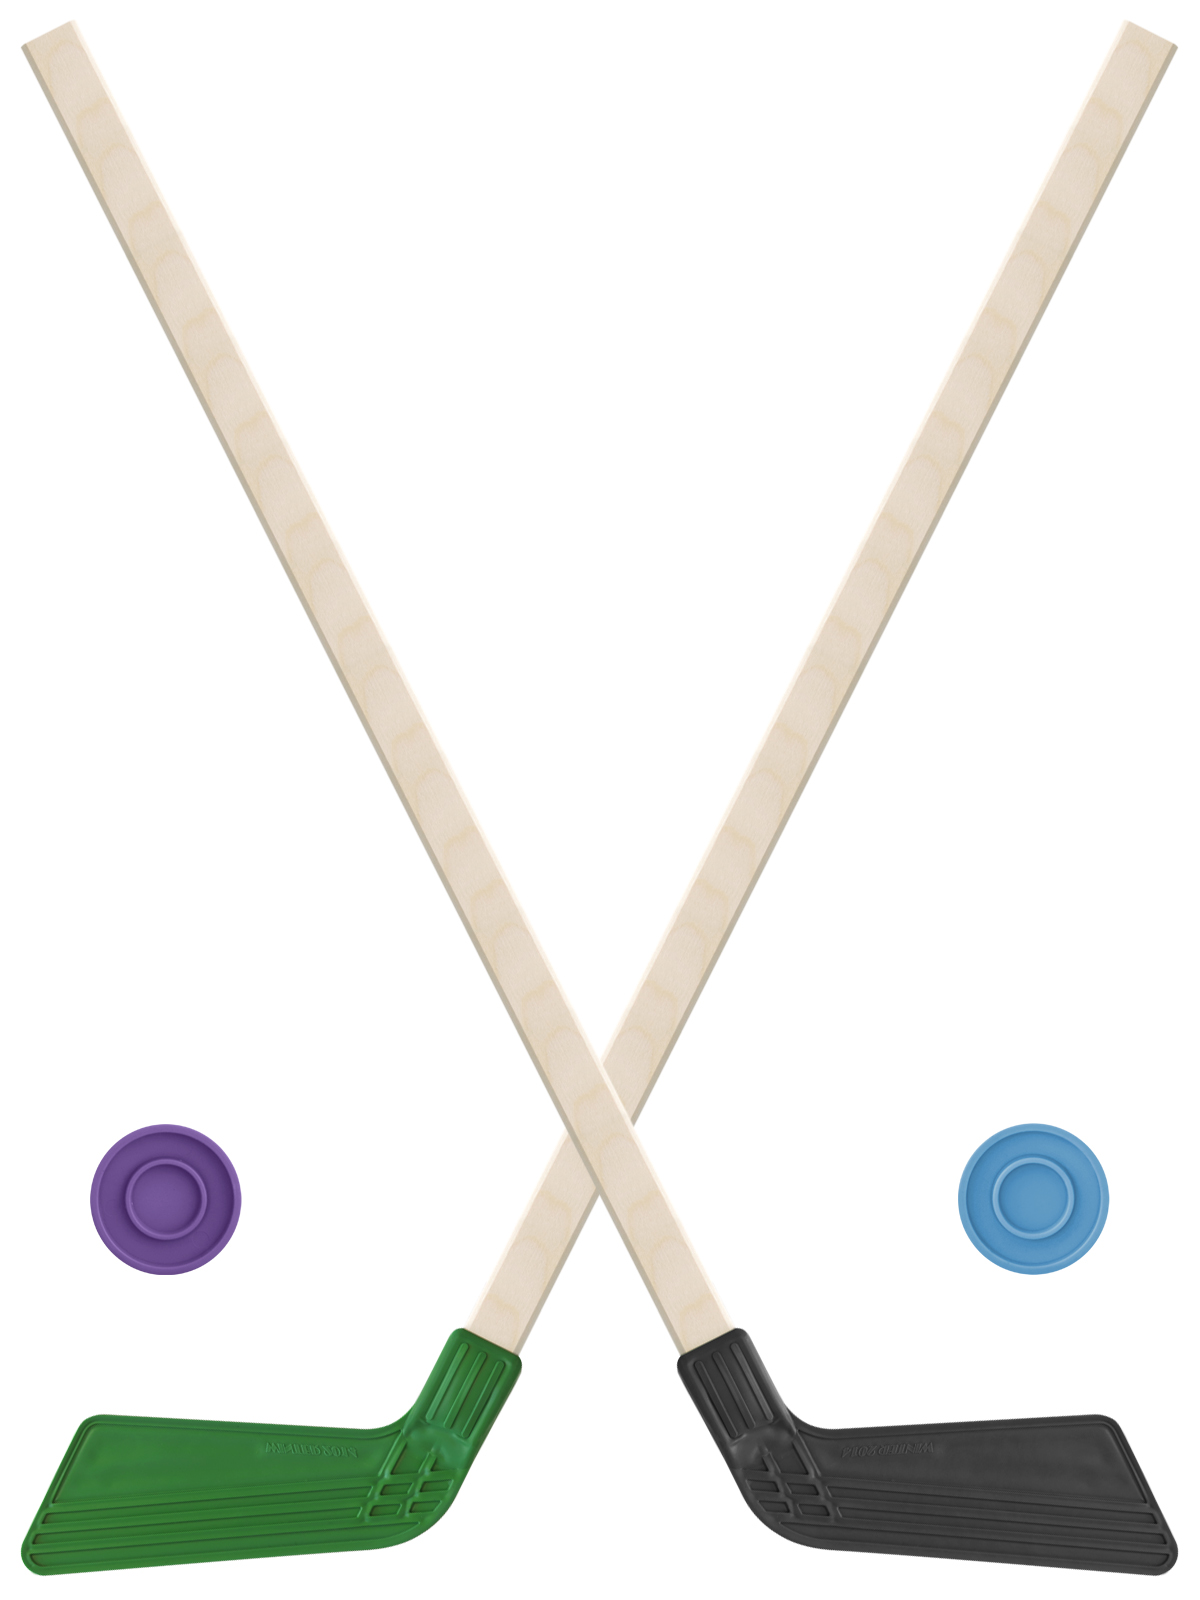 Детский хоккейный набор Задира-плюс клюшка хоккейная детская 80см (зел и черн) 2шт +2шайбы